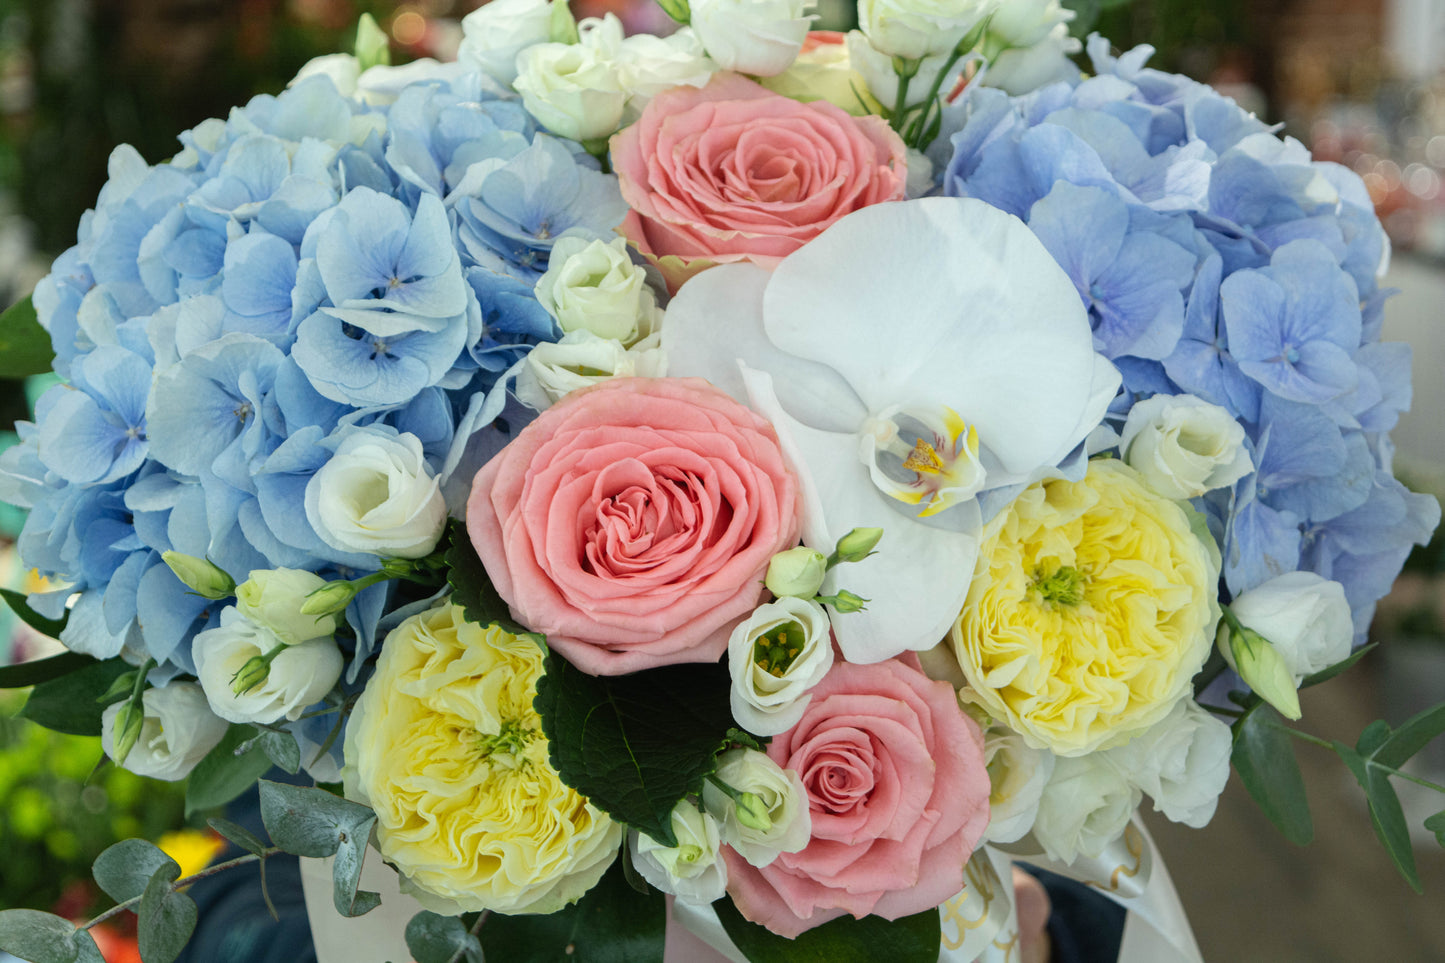 Aranjament floral pastel de vară cu hortensie albastră, trandafiri galbeni și roz și phalaenopsis alb - livrare flori în Reșița